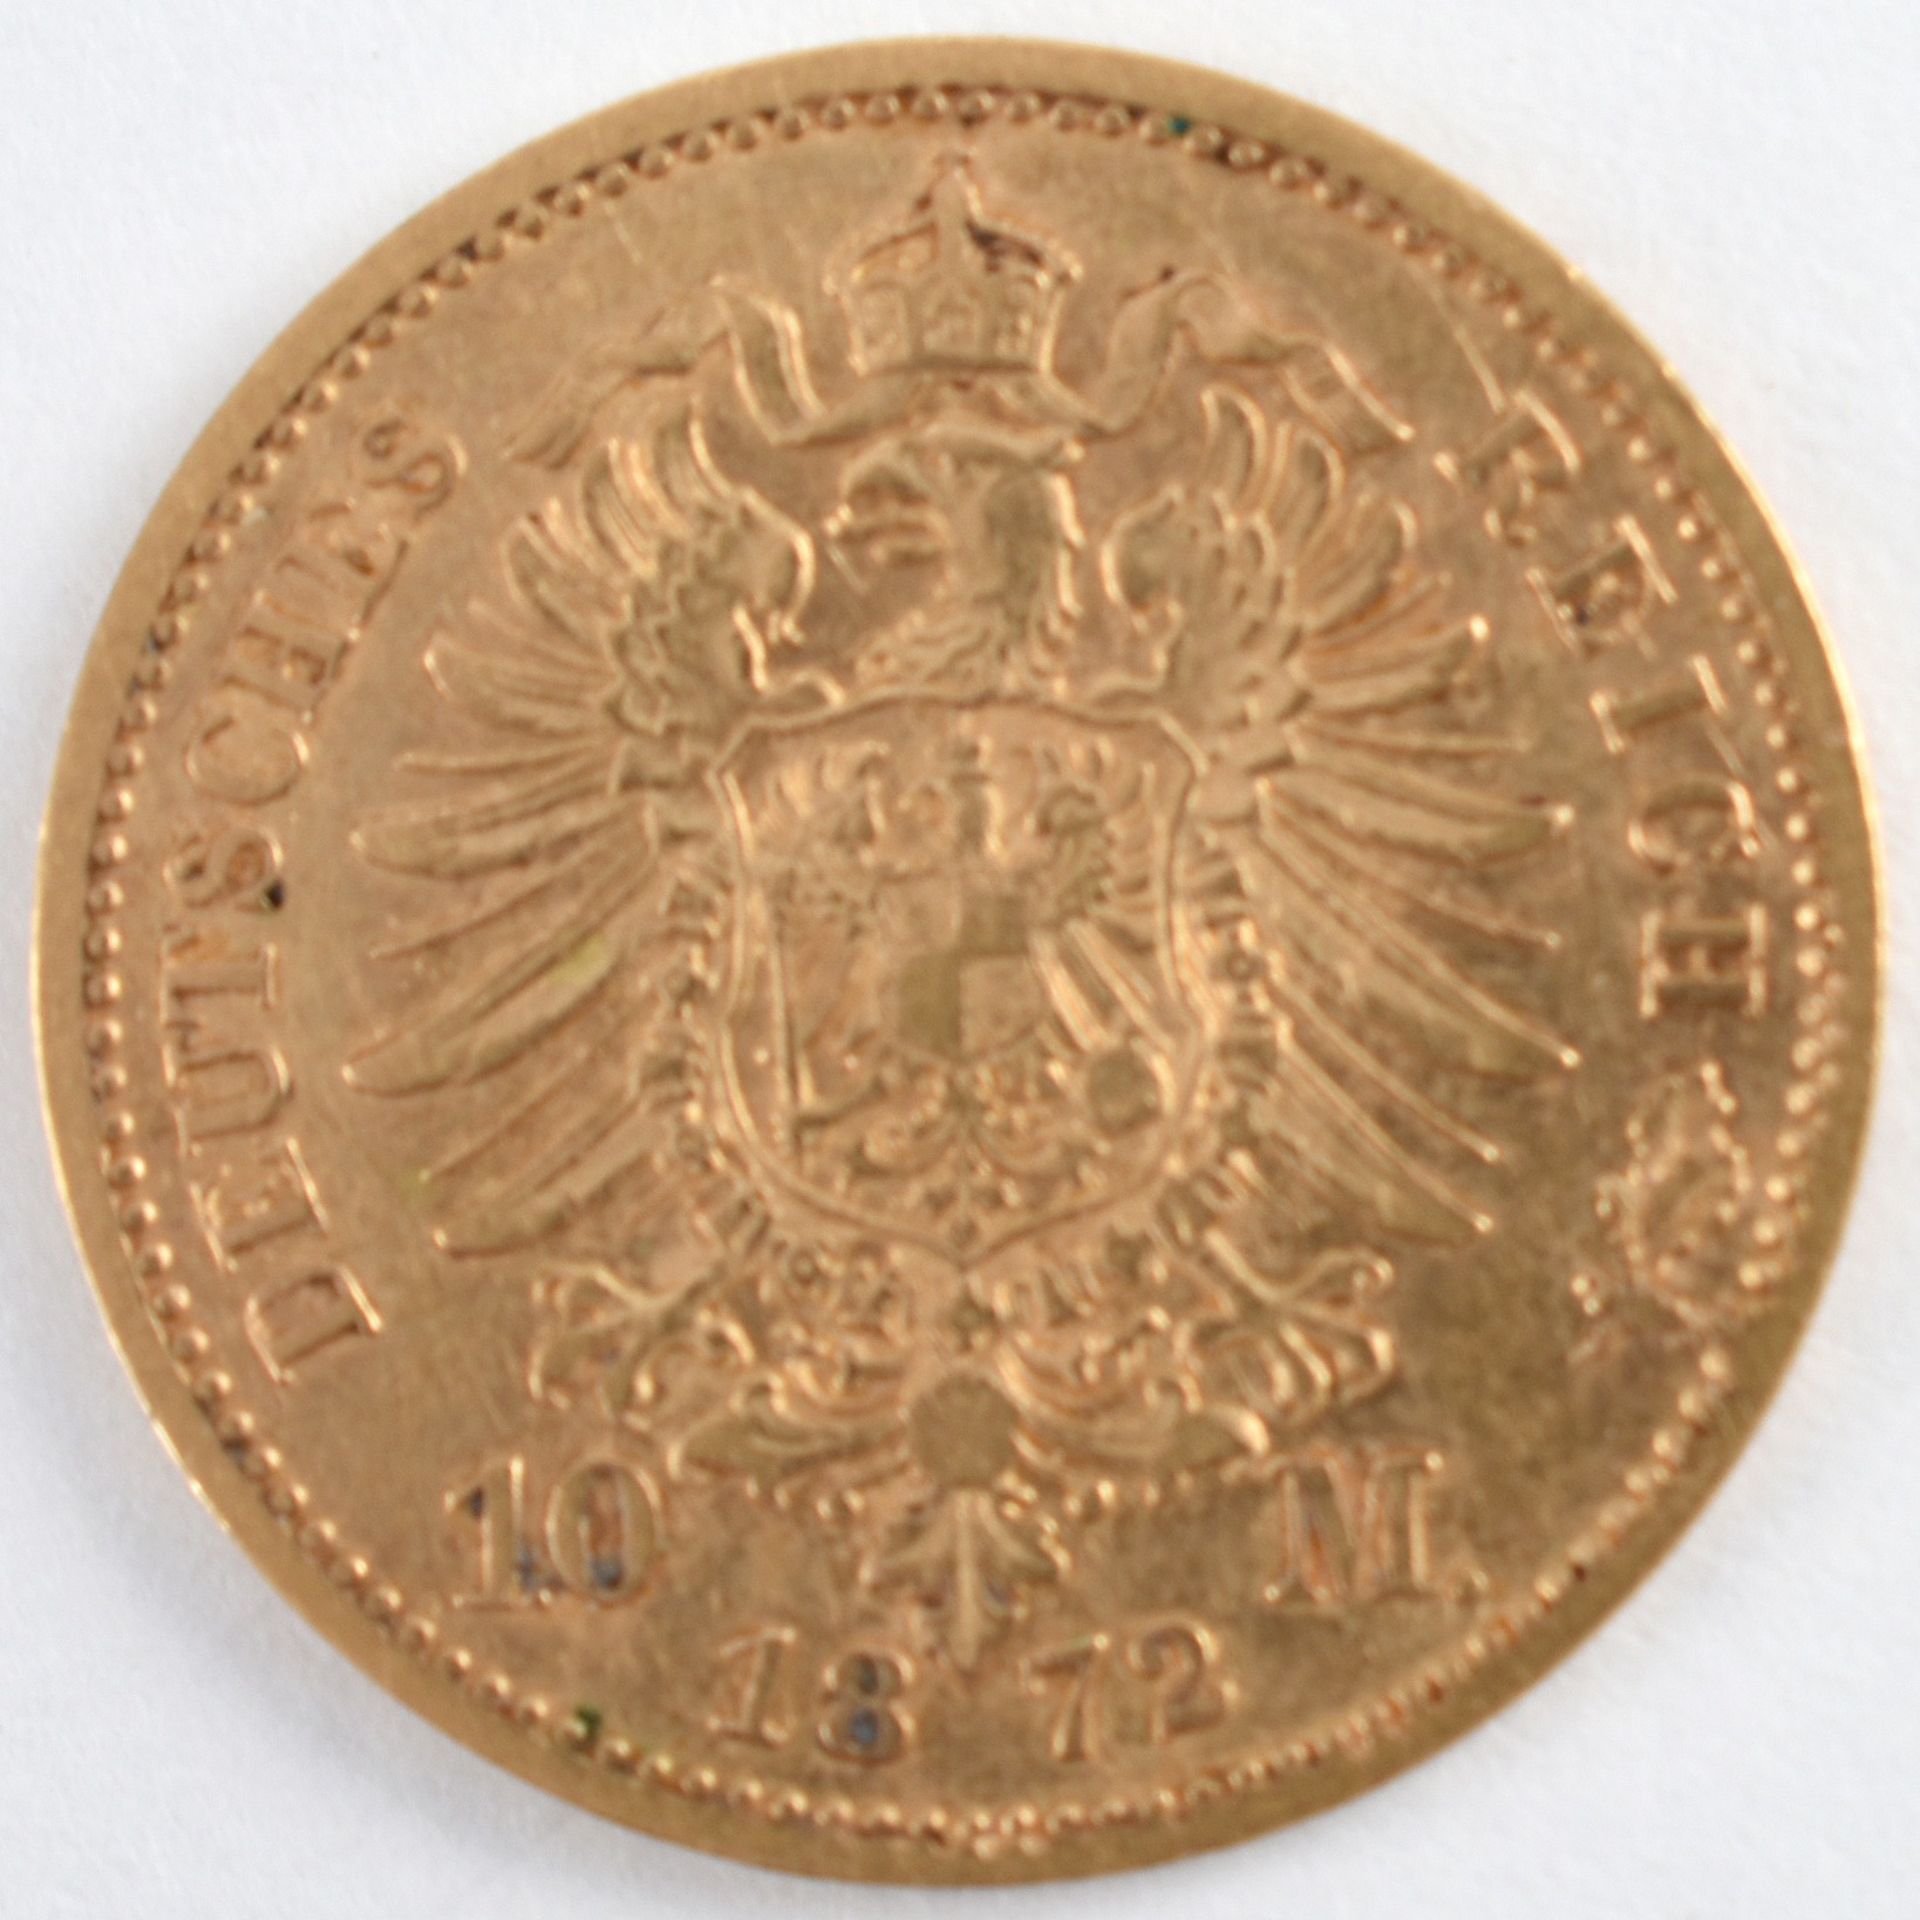 Goldmünze Kaiserreich - Preußen 1872 10 Mark in Gold, 900/1000, 3,98 g, D ca. 19,5 mm, av. Wilhelm - Image 3 of 3